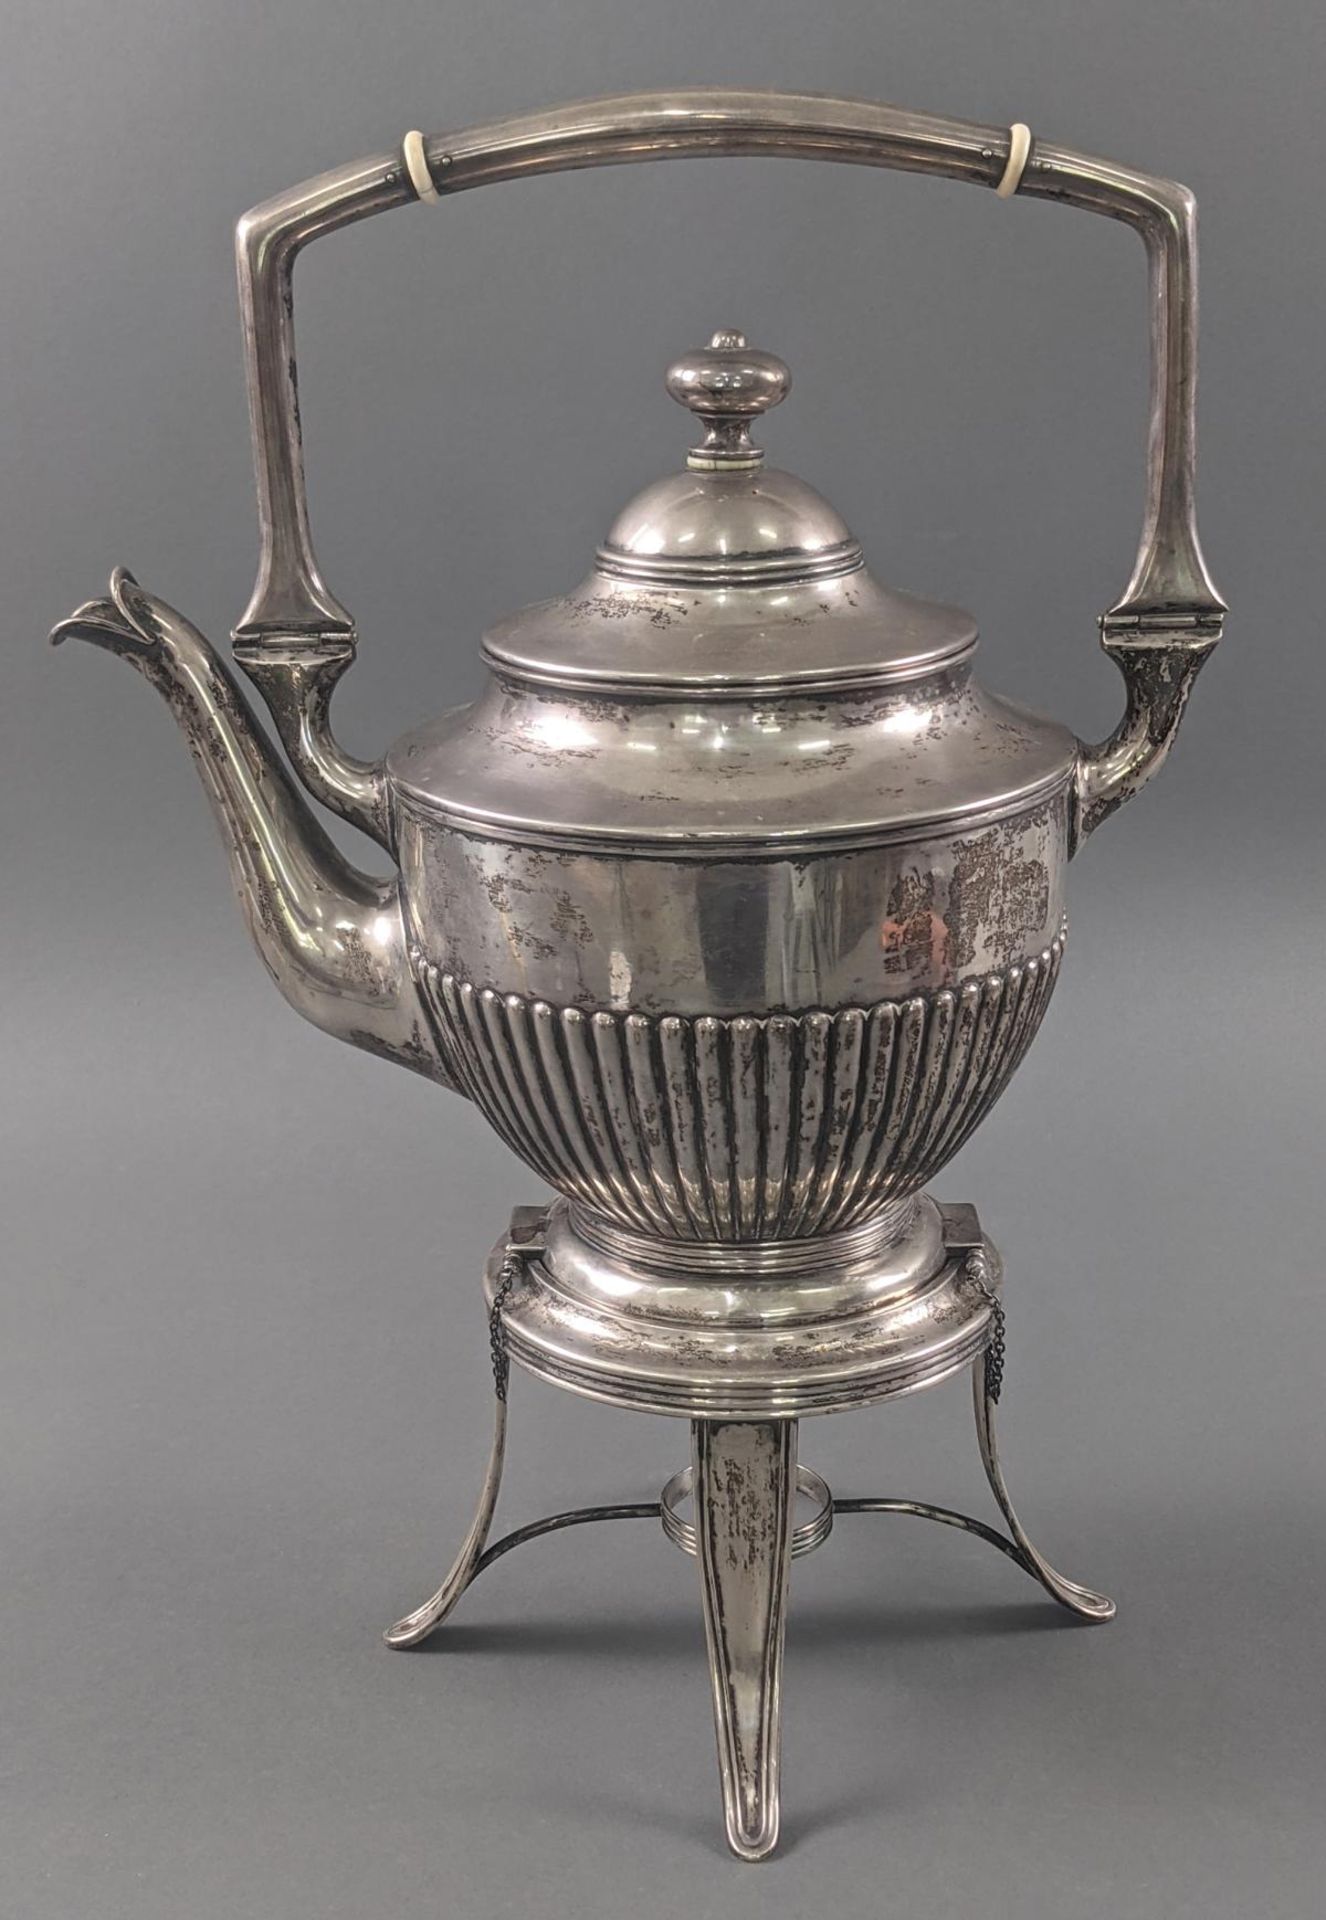 Teekessel auf Rechaud, England um 1900, Silber geprüft